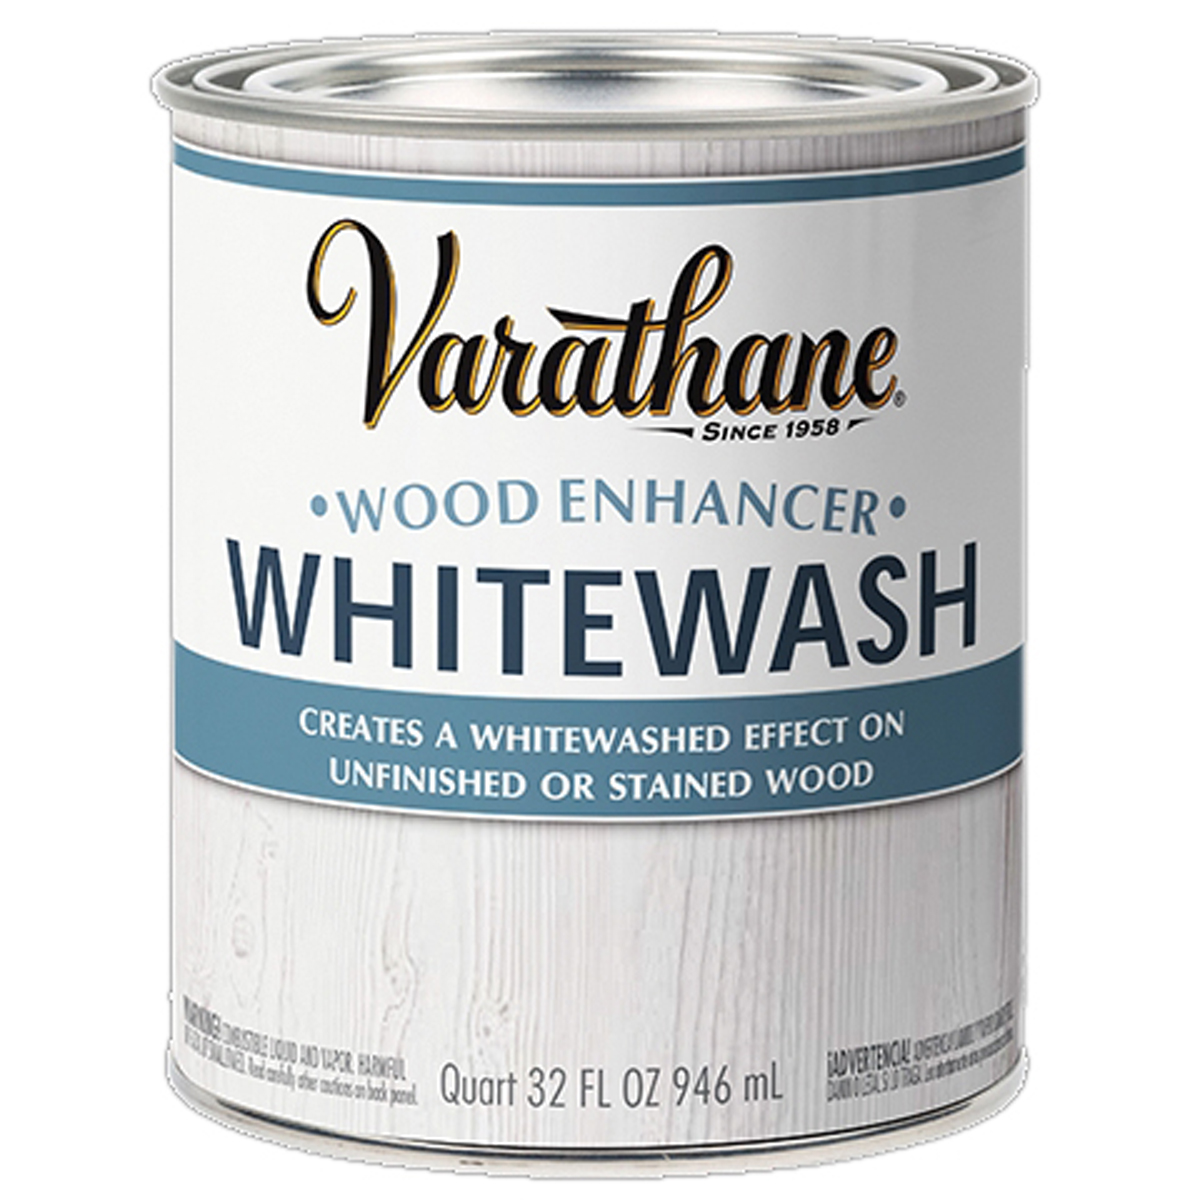 Varathane 358301 Premium Gel Stain, Dark Walnut, Liquid, 1 qt